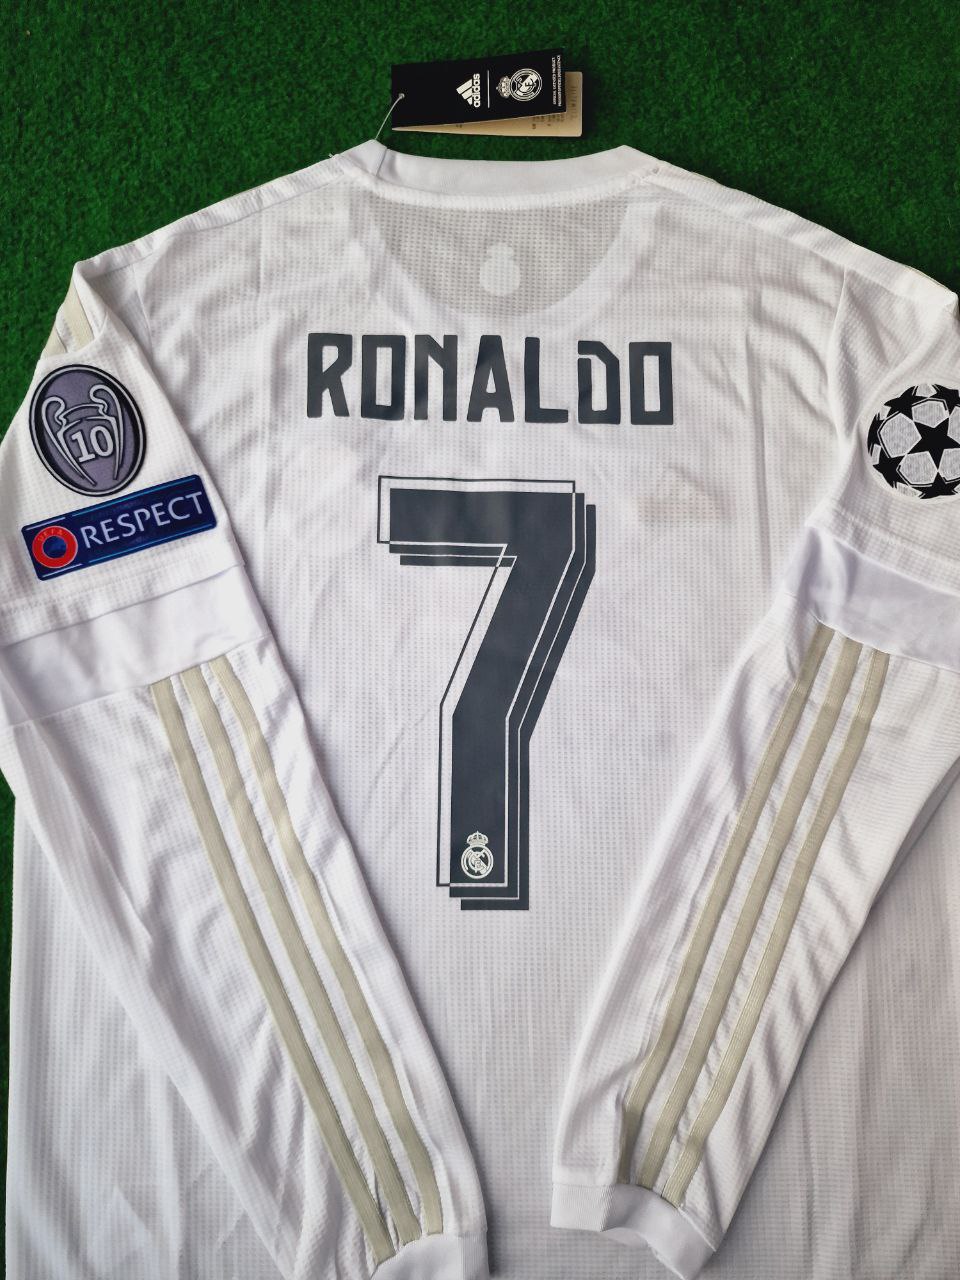 Cristiano Ronaldo Real Madrid White Retro Football Jersey